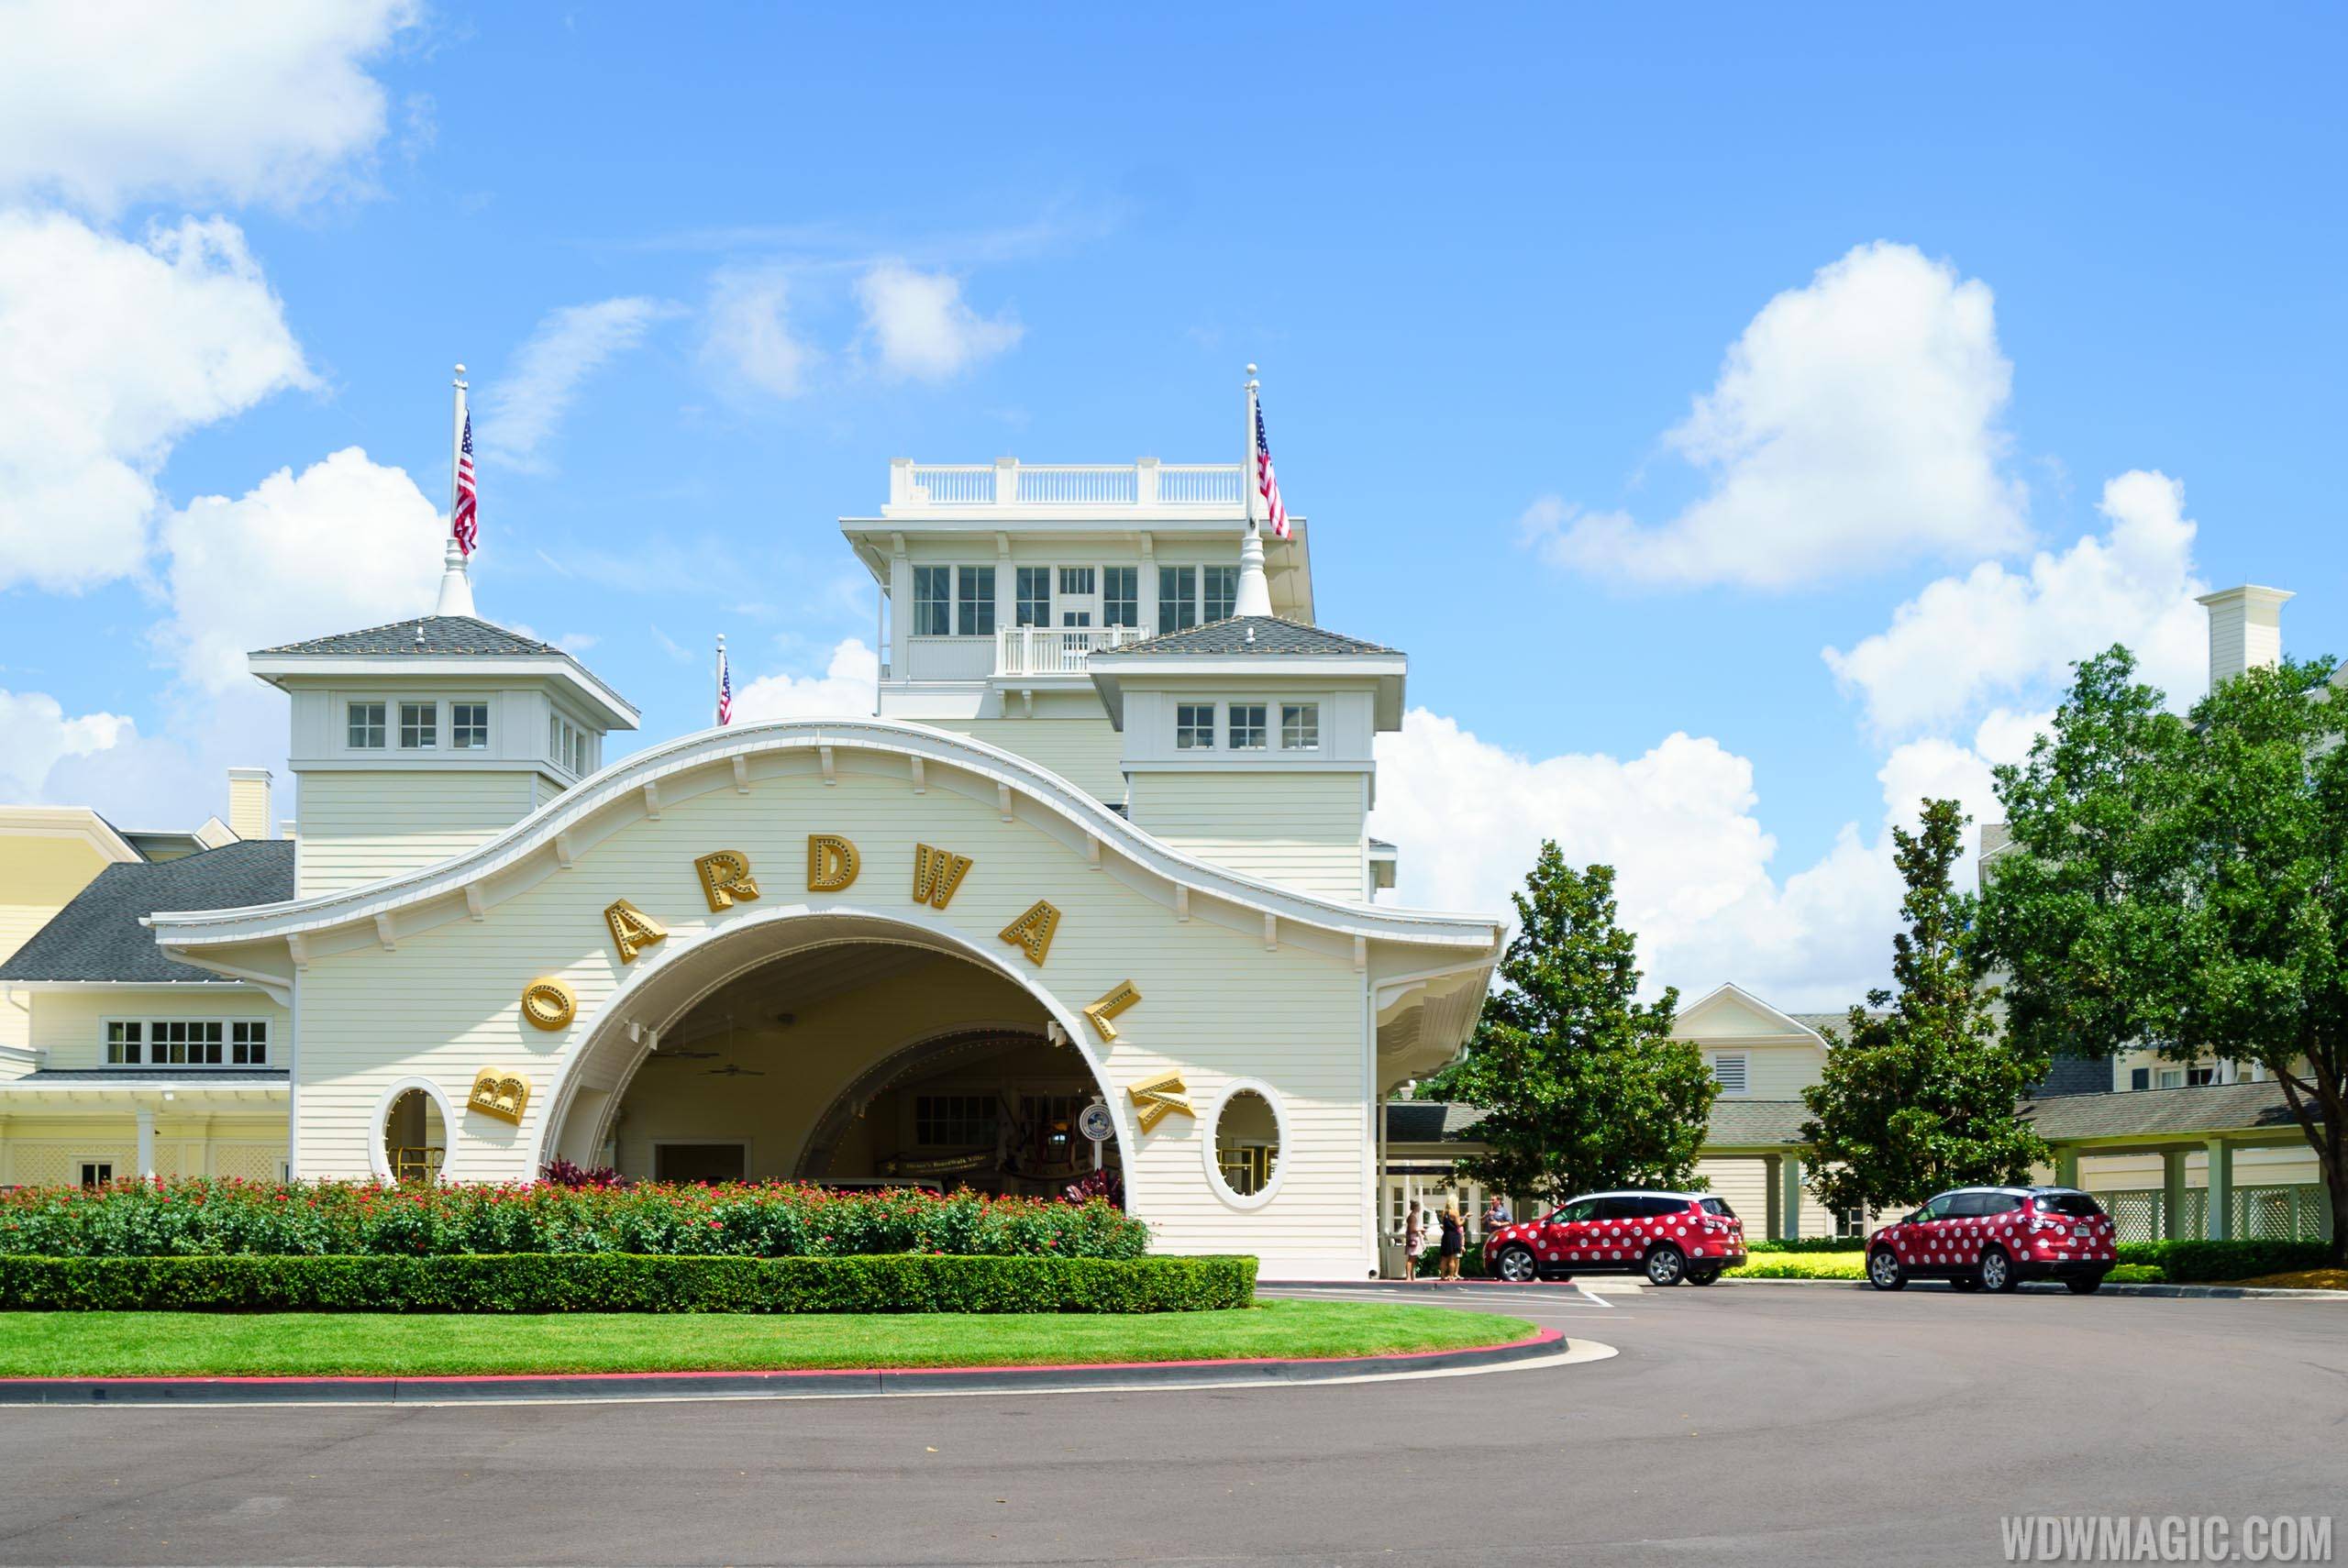 Disney’s BoardWalk Inn will reopen July 2